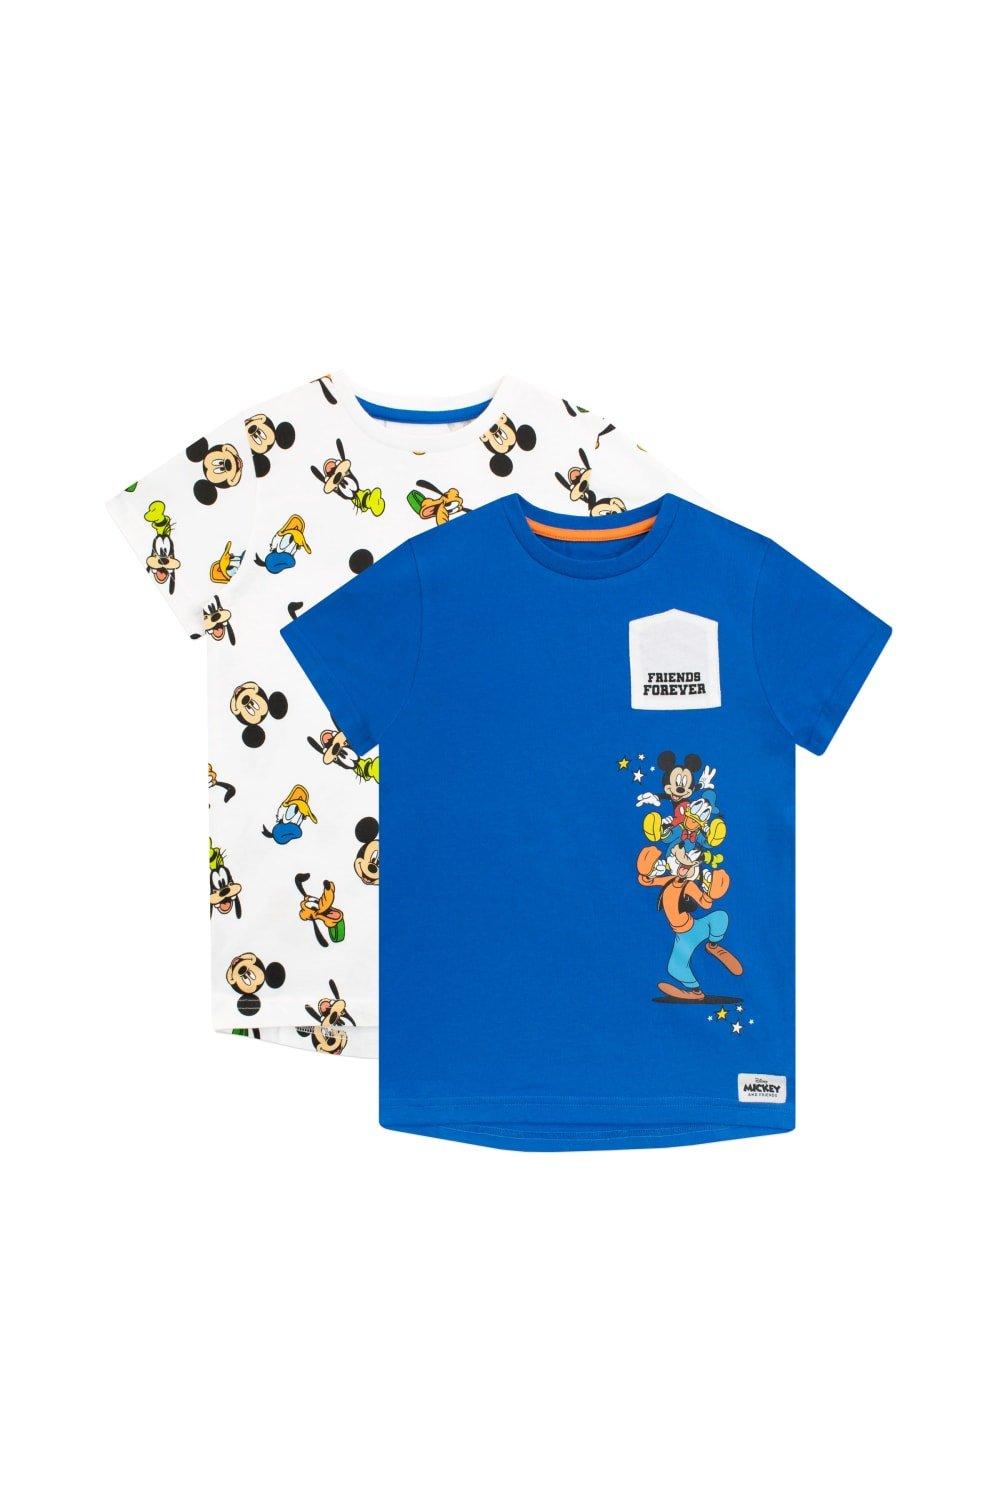 Набор футболок «Микки Маус и друзья», 2 шт. Disney, синий оригинальная футболка с микки маусом для мальчиков disney красный